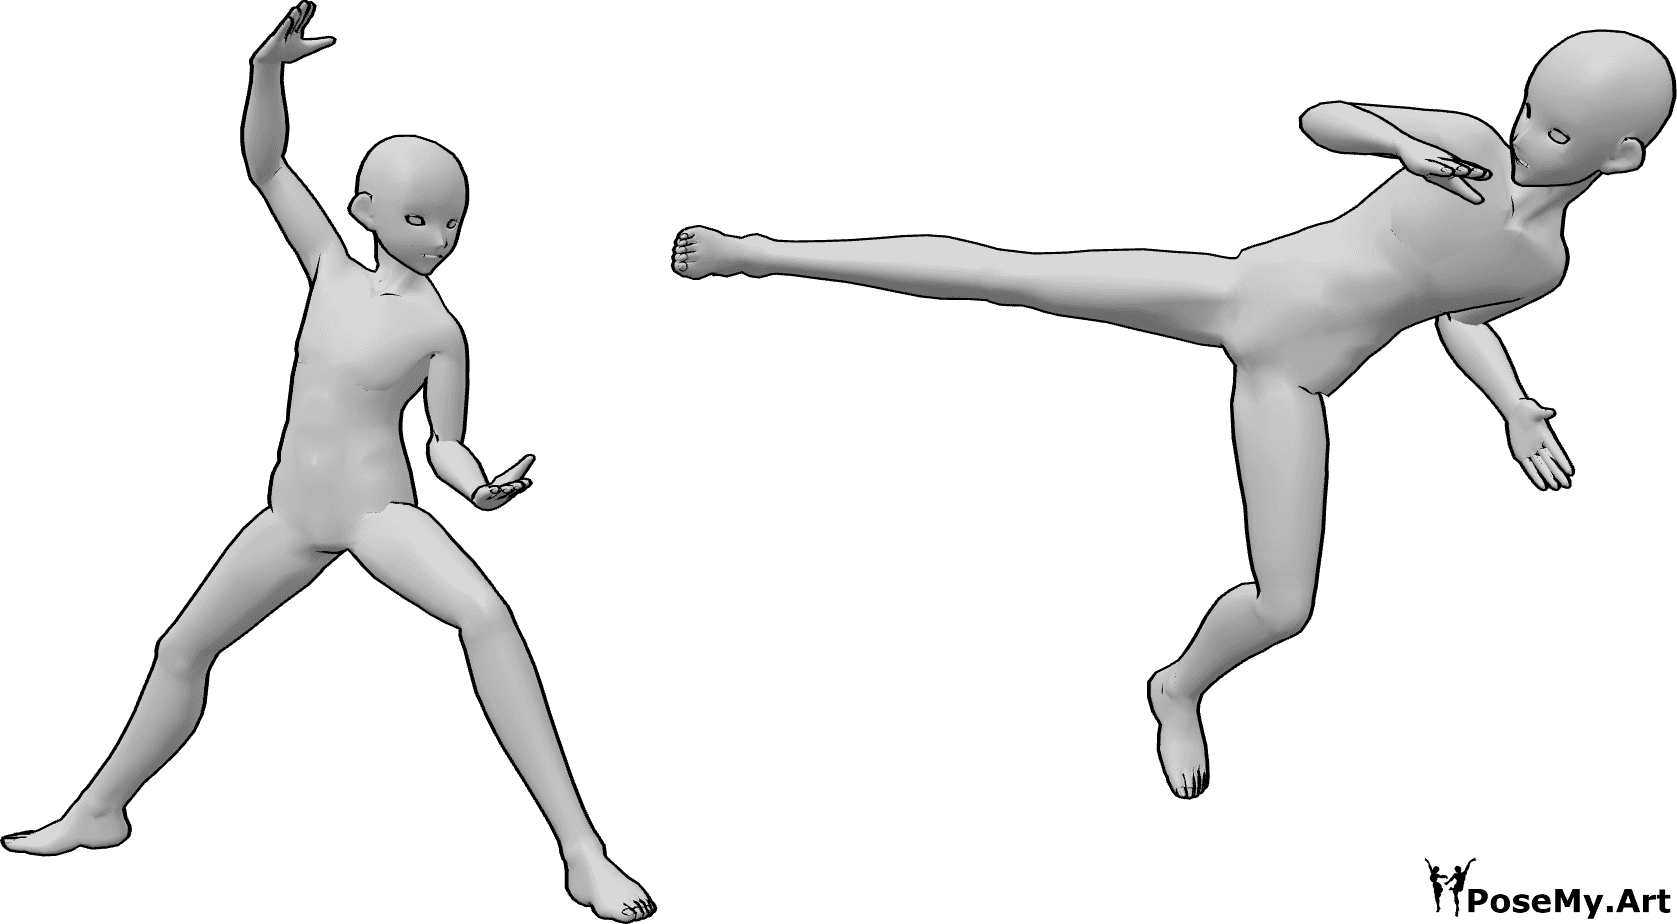 Référence des poses- Anime ninja fighting pose - Deux hommes se battent, l'un d'entre eux prend la pose d'un ninja.